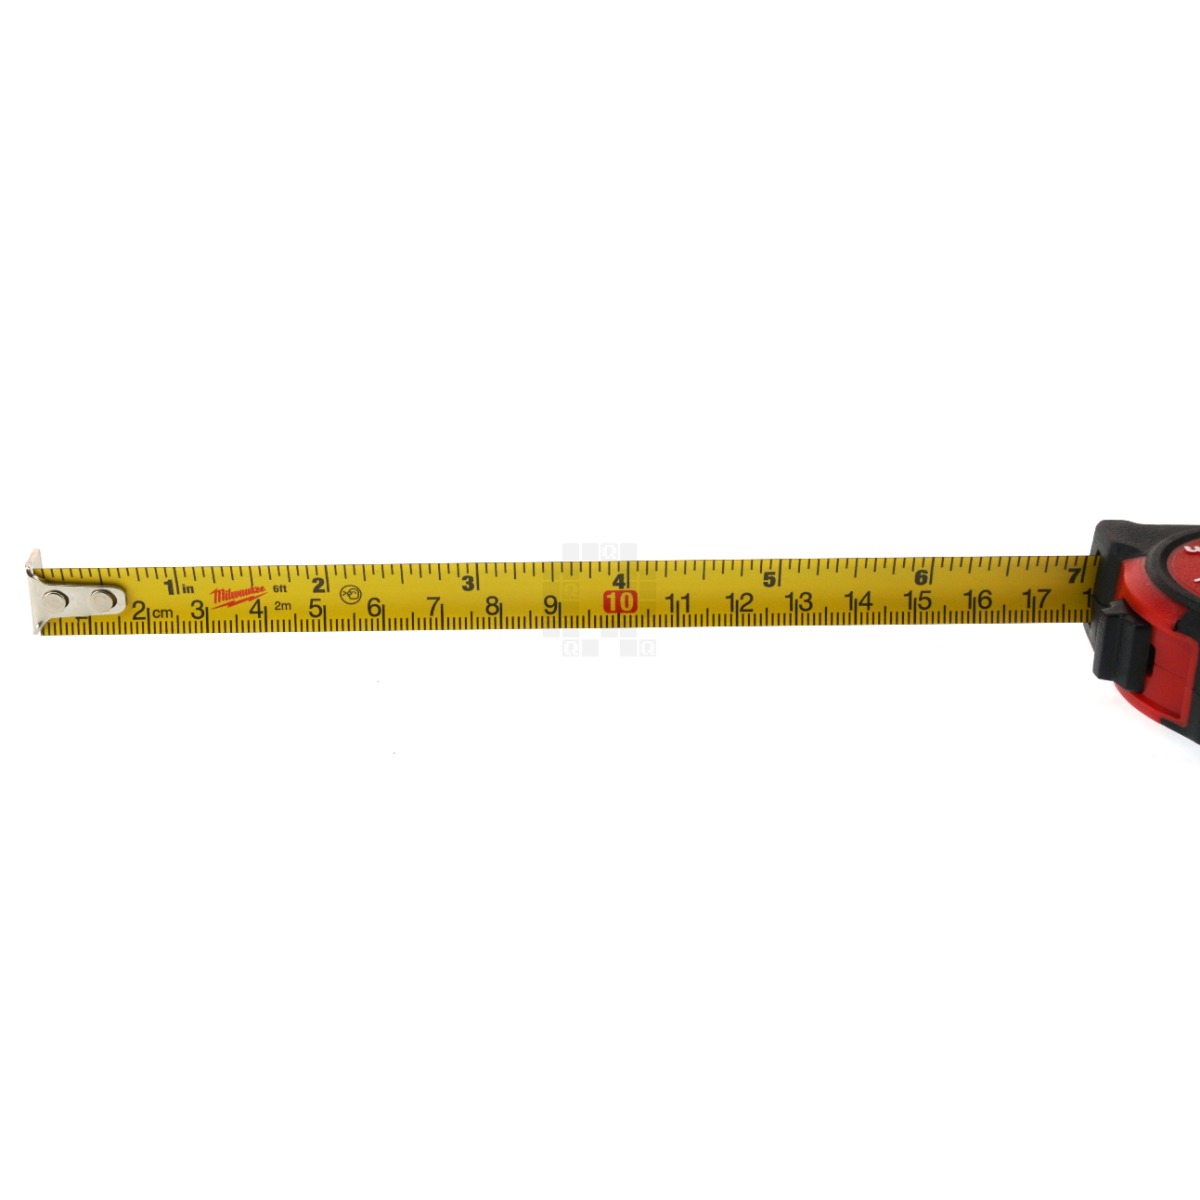 Tape Measure, 16 Feet/5 Meters, Standard/Metric, With Logo